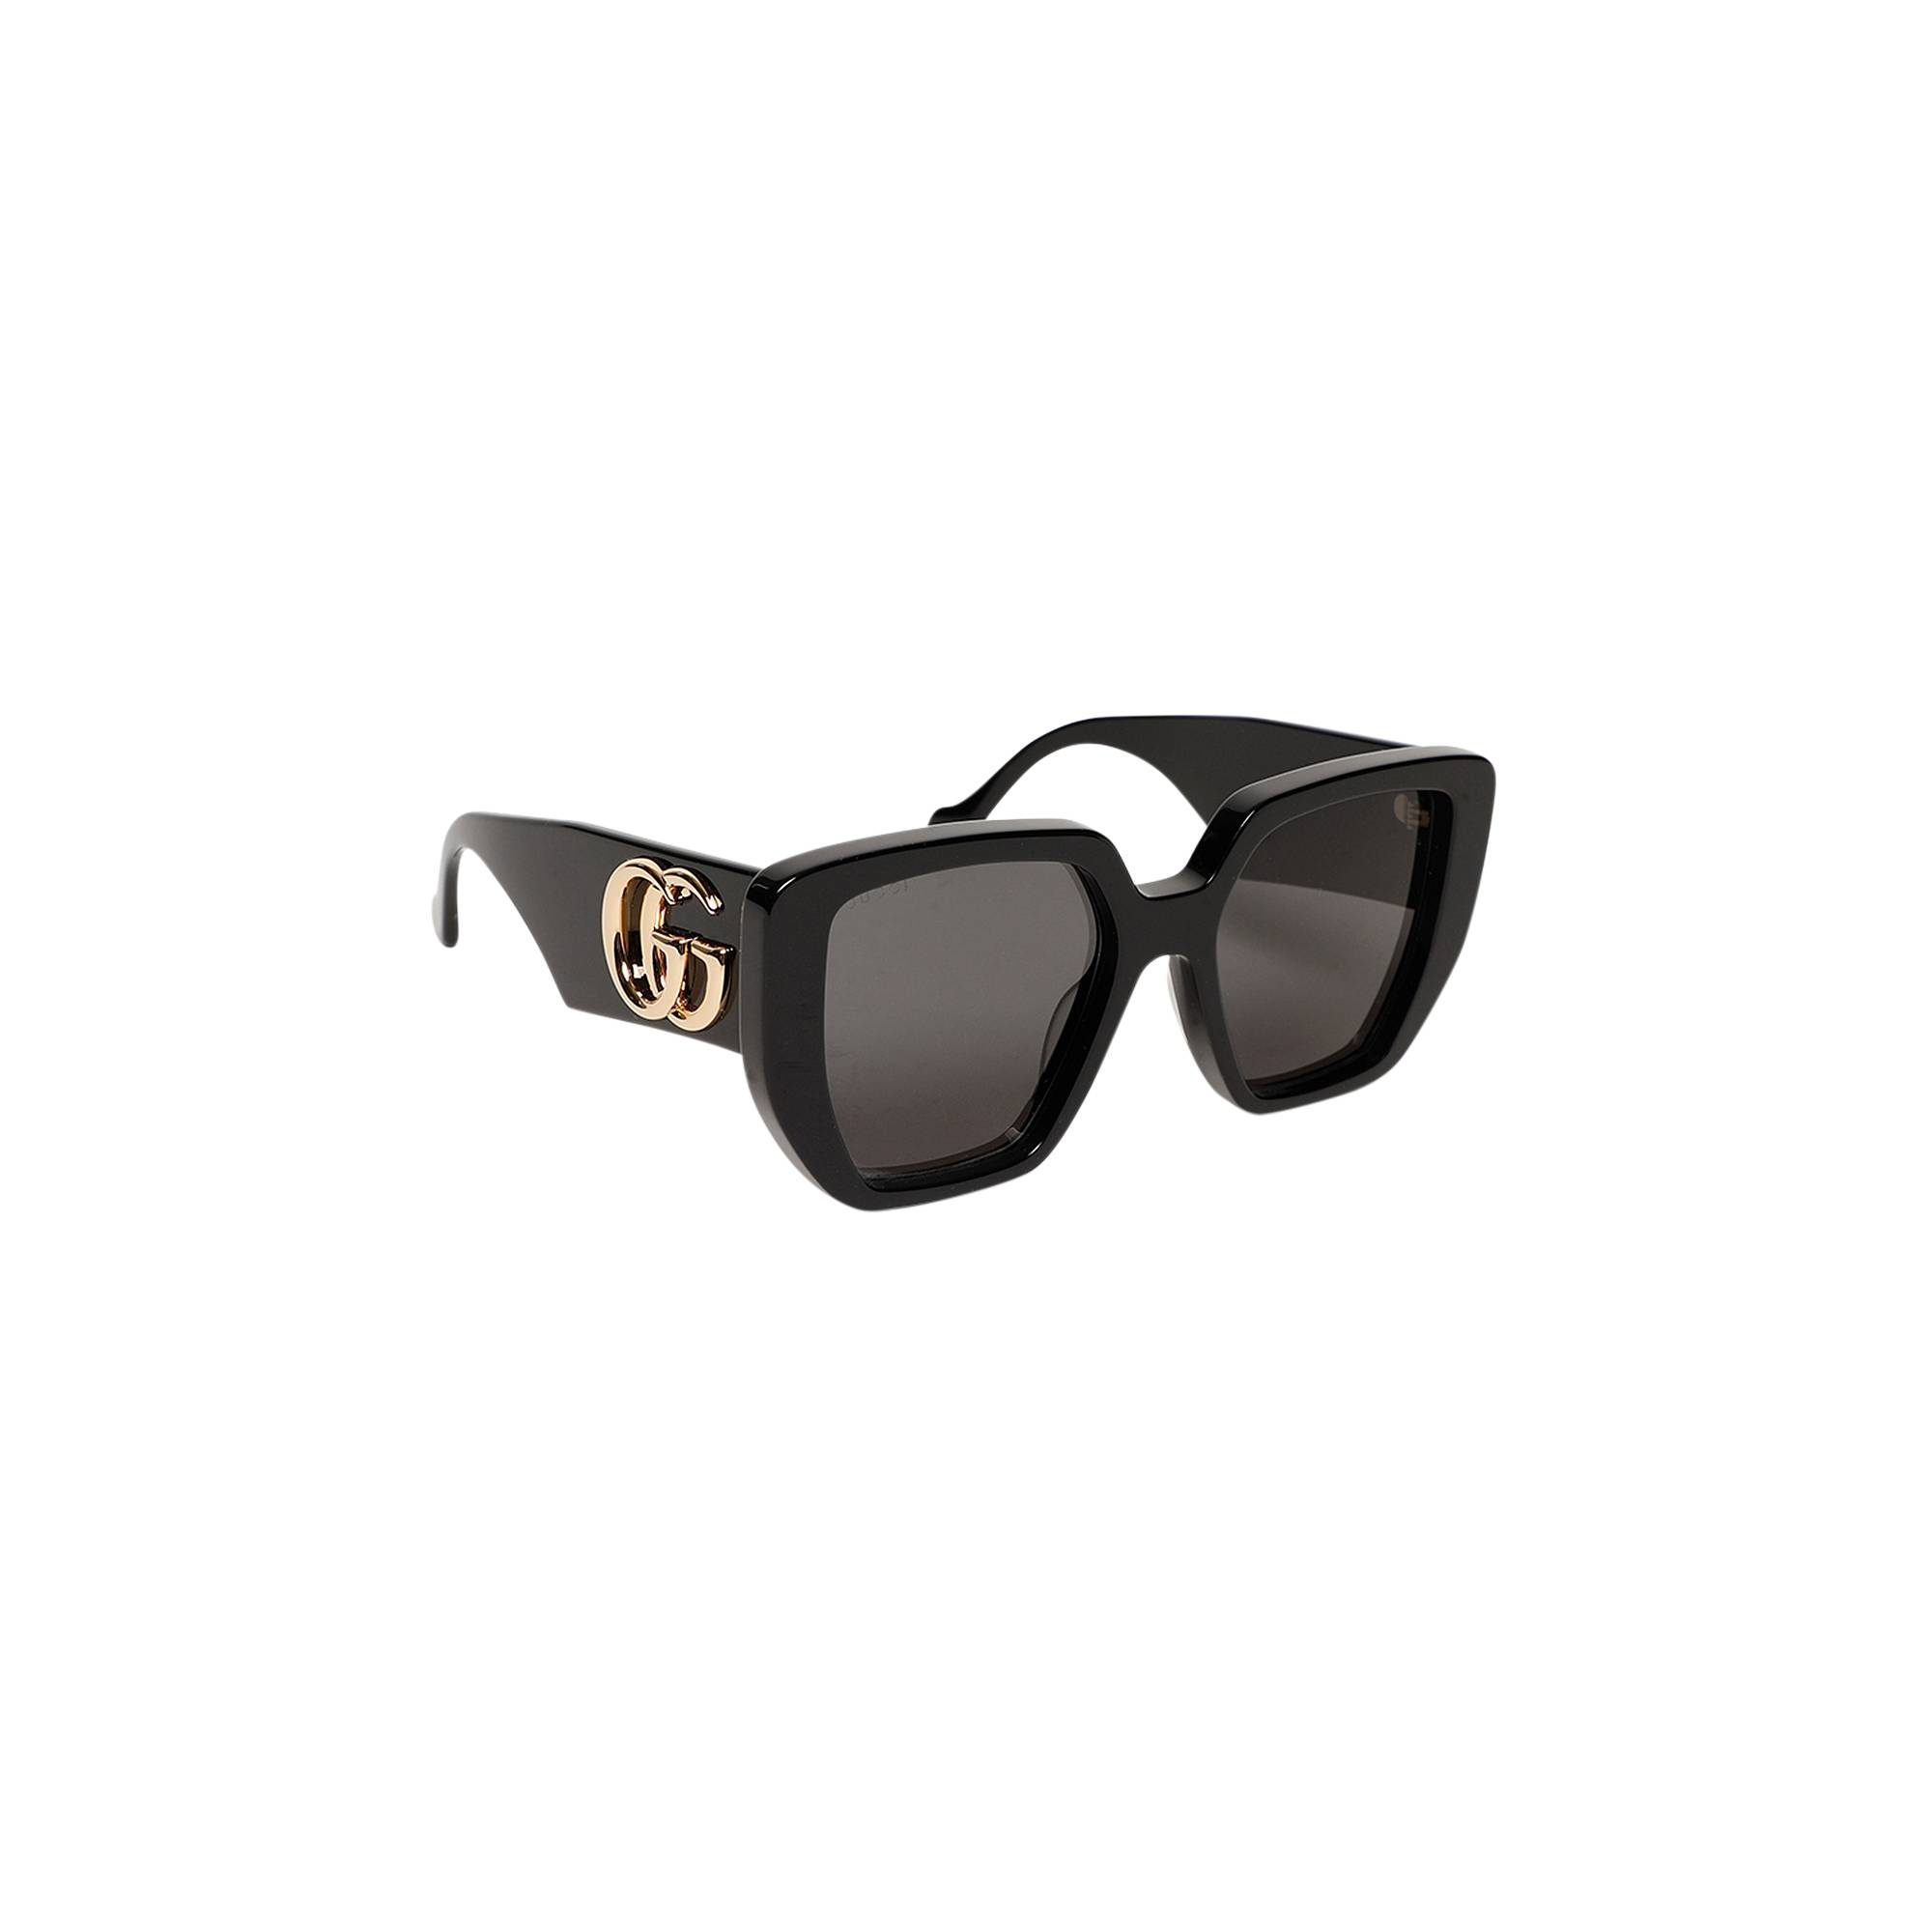 Gucci Sunglasses 'Black' - Gucci - GG0956S 003 54 | GOAT